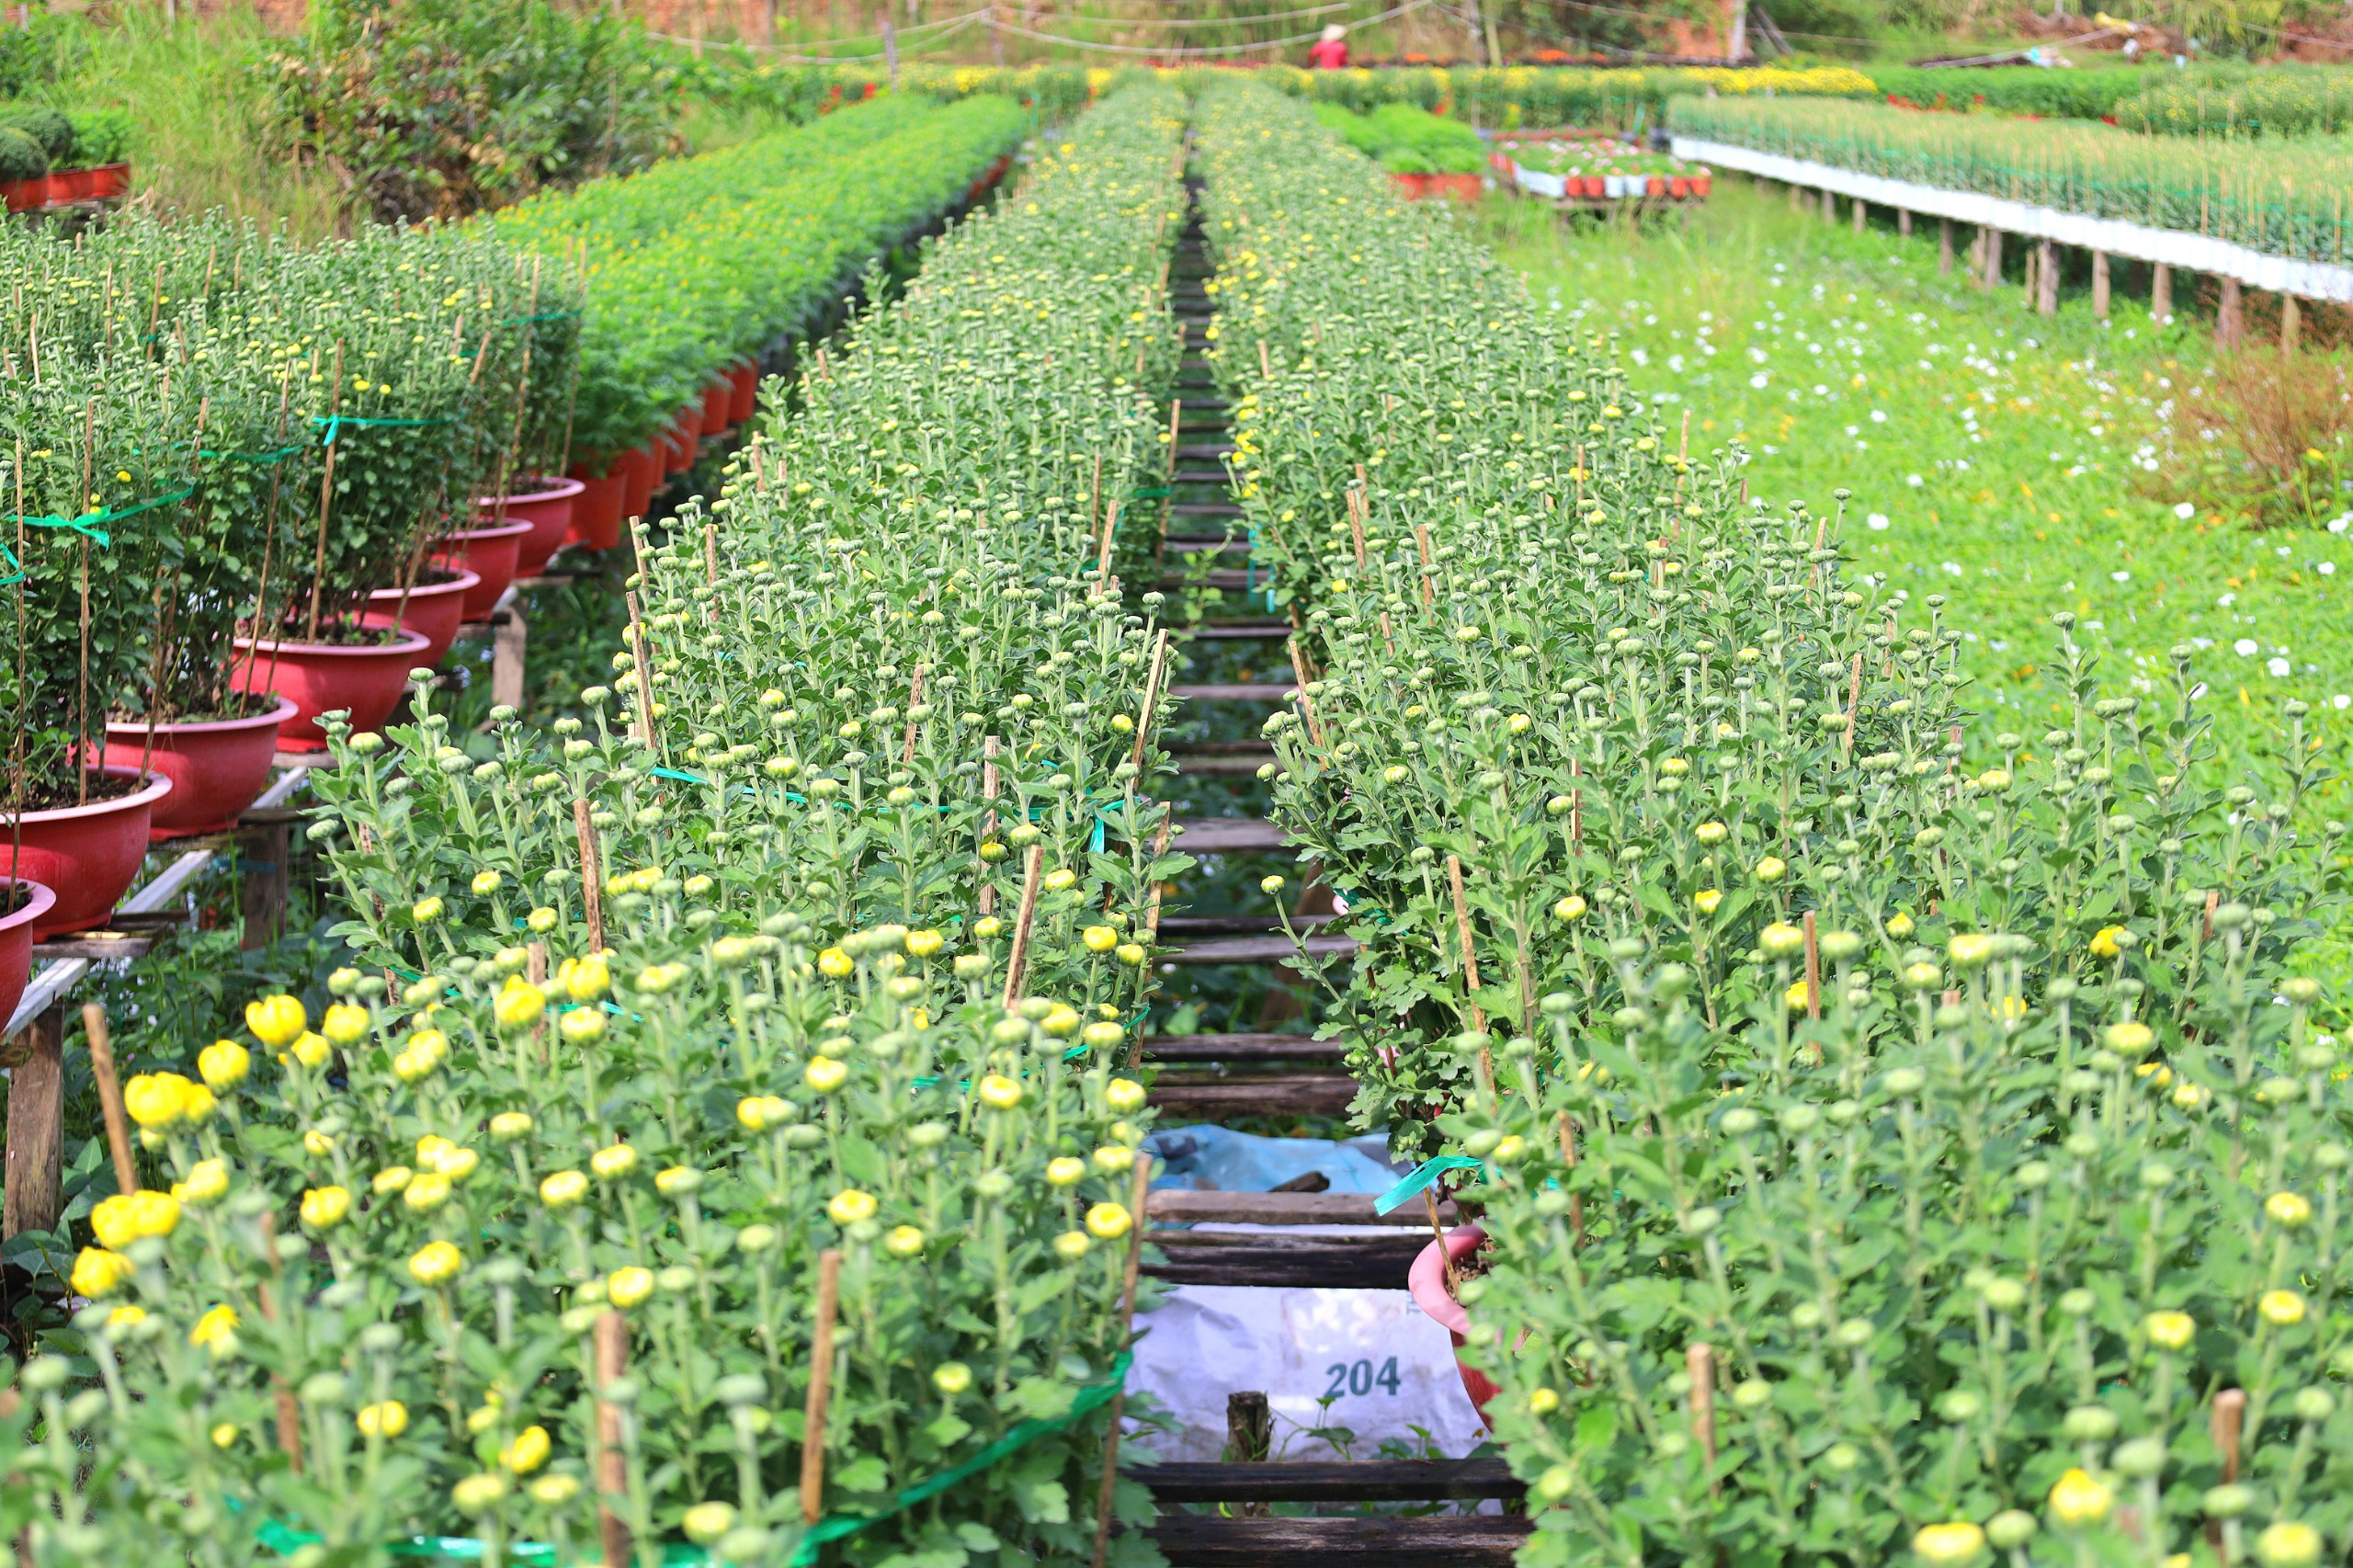 Năm nay làng hoa của quận Bình Thủy sẽ cho ra thị trường trên 280.000 chậu hoa kiểng các loại.